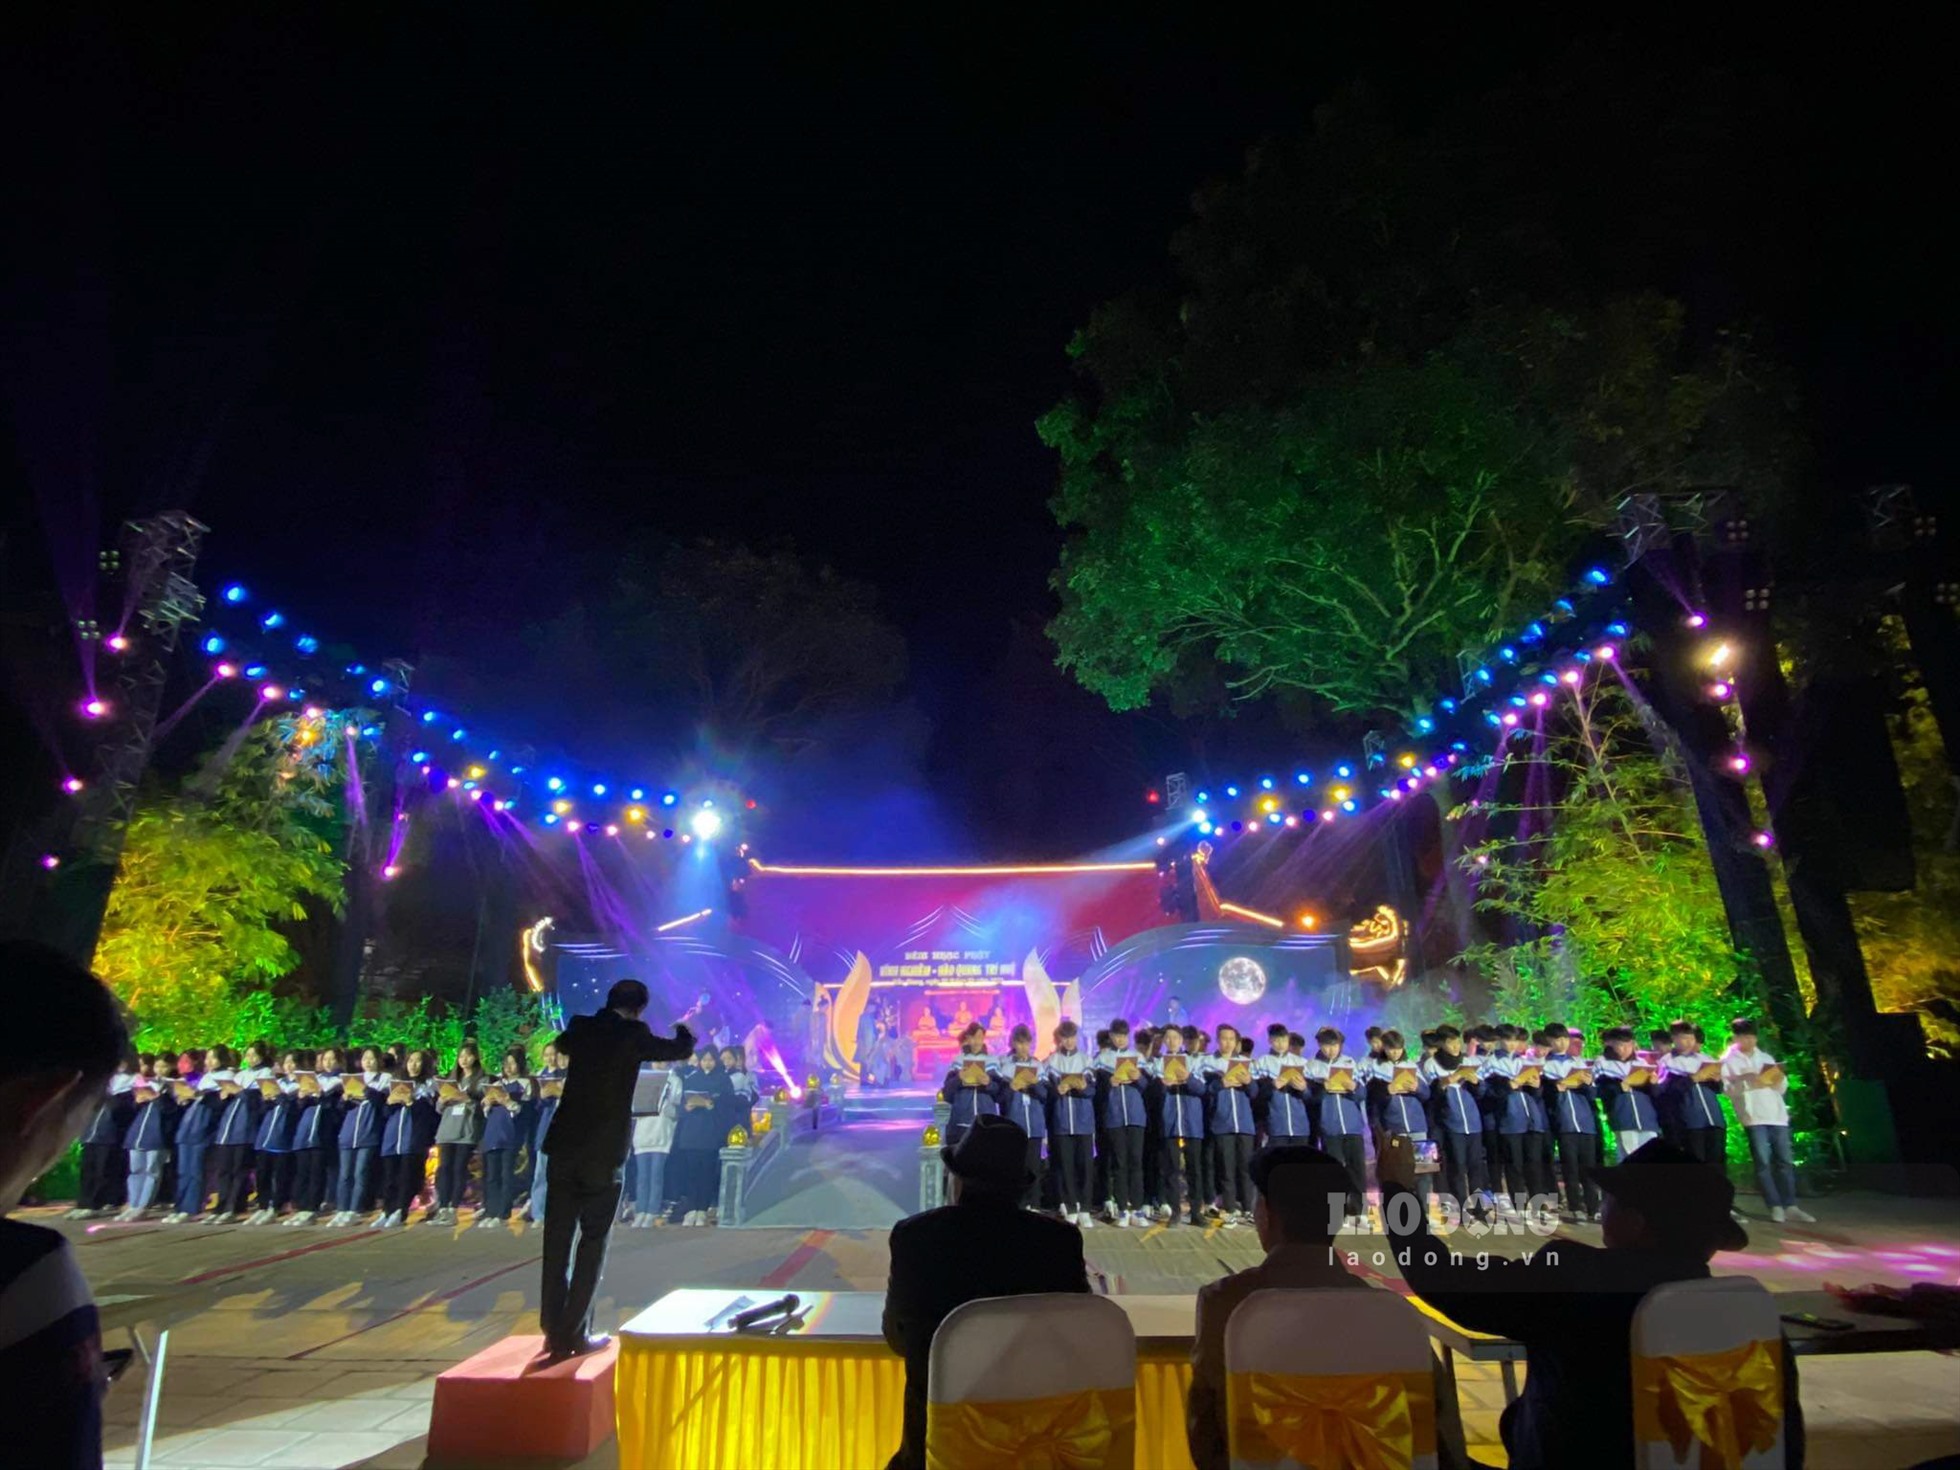 Chùa Vĩnh Nghiêm, huyện Yên Dũng đã sẵn sàng cho đêm nhạc Phật trong khuôn khổ Tuần lễ văn hoa - du lịch. Ảnh: Nguyễn Kế.